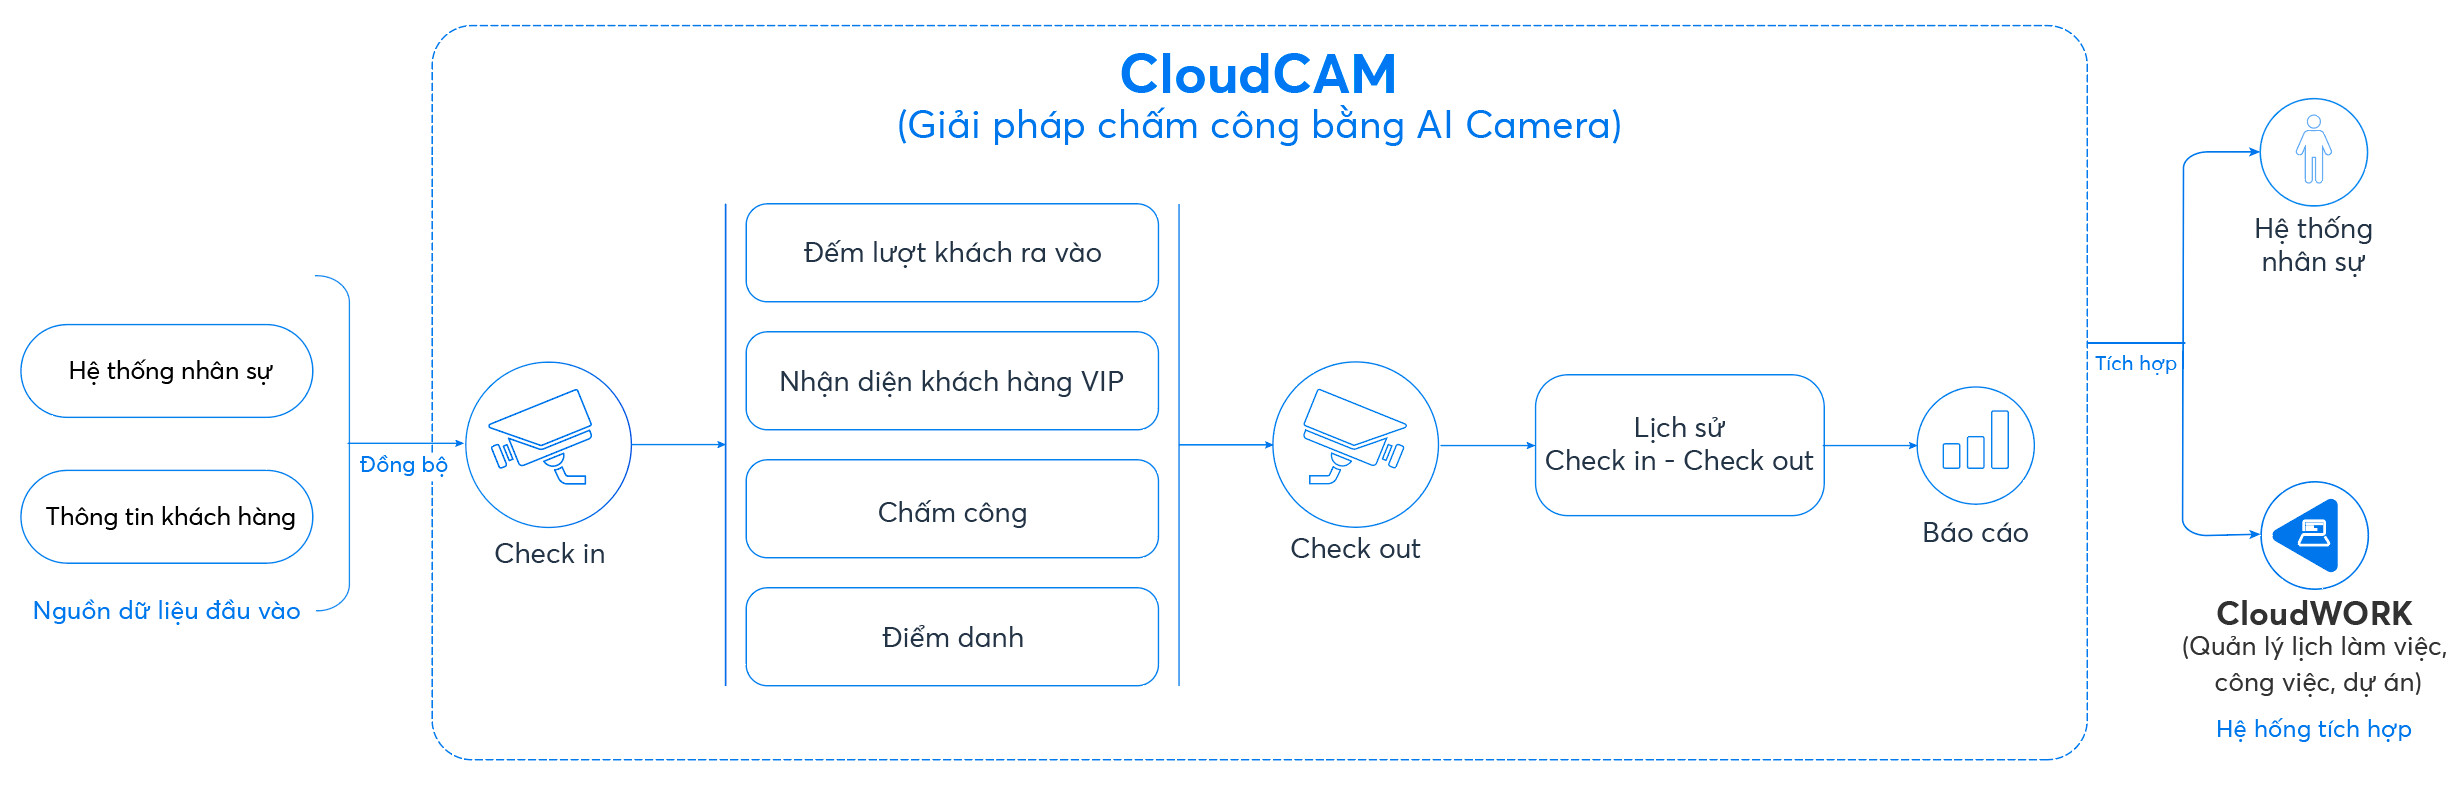 Quy trình chấm công, điểm danh bằng CloudCAM